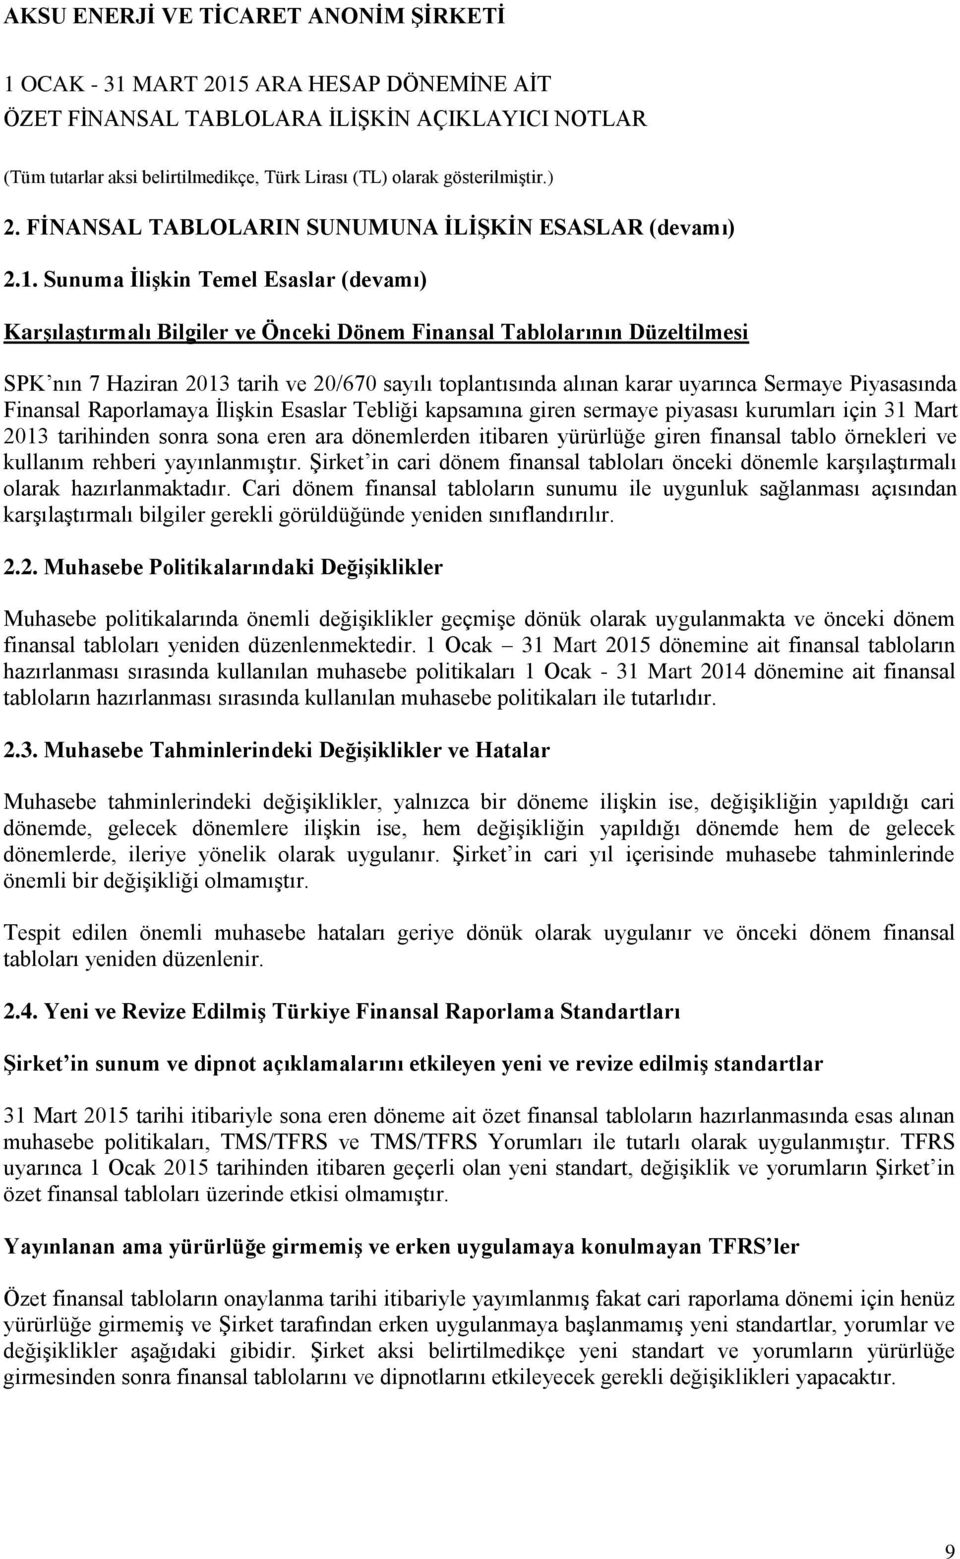 Sermaye Piyasasında Finansal Raporlamaya İlişkin Esaslar Tebliği kapsamına giren sermaye piyasası kurumları için 31 Mart 2013 tarihinden sonra sona eren ara dönemlerden itibaren yürürlüğe giren